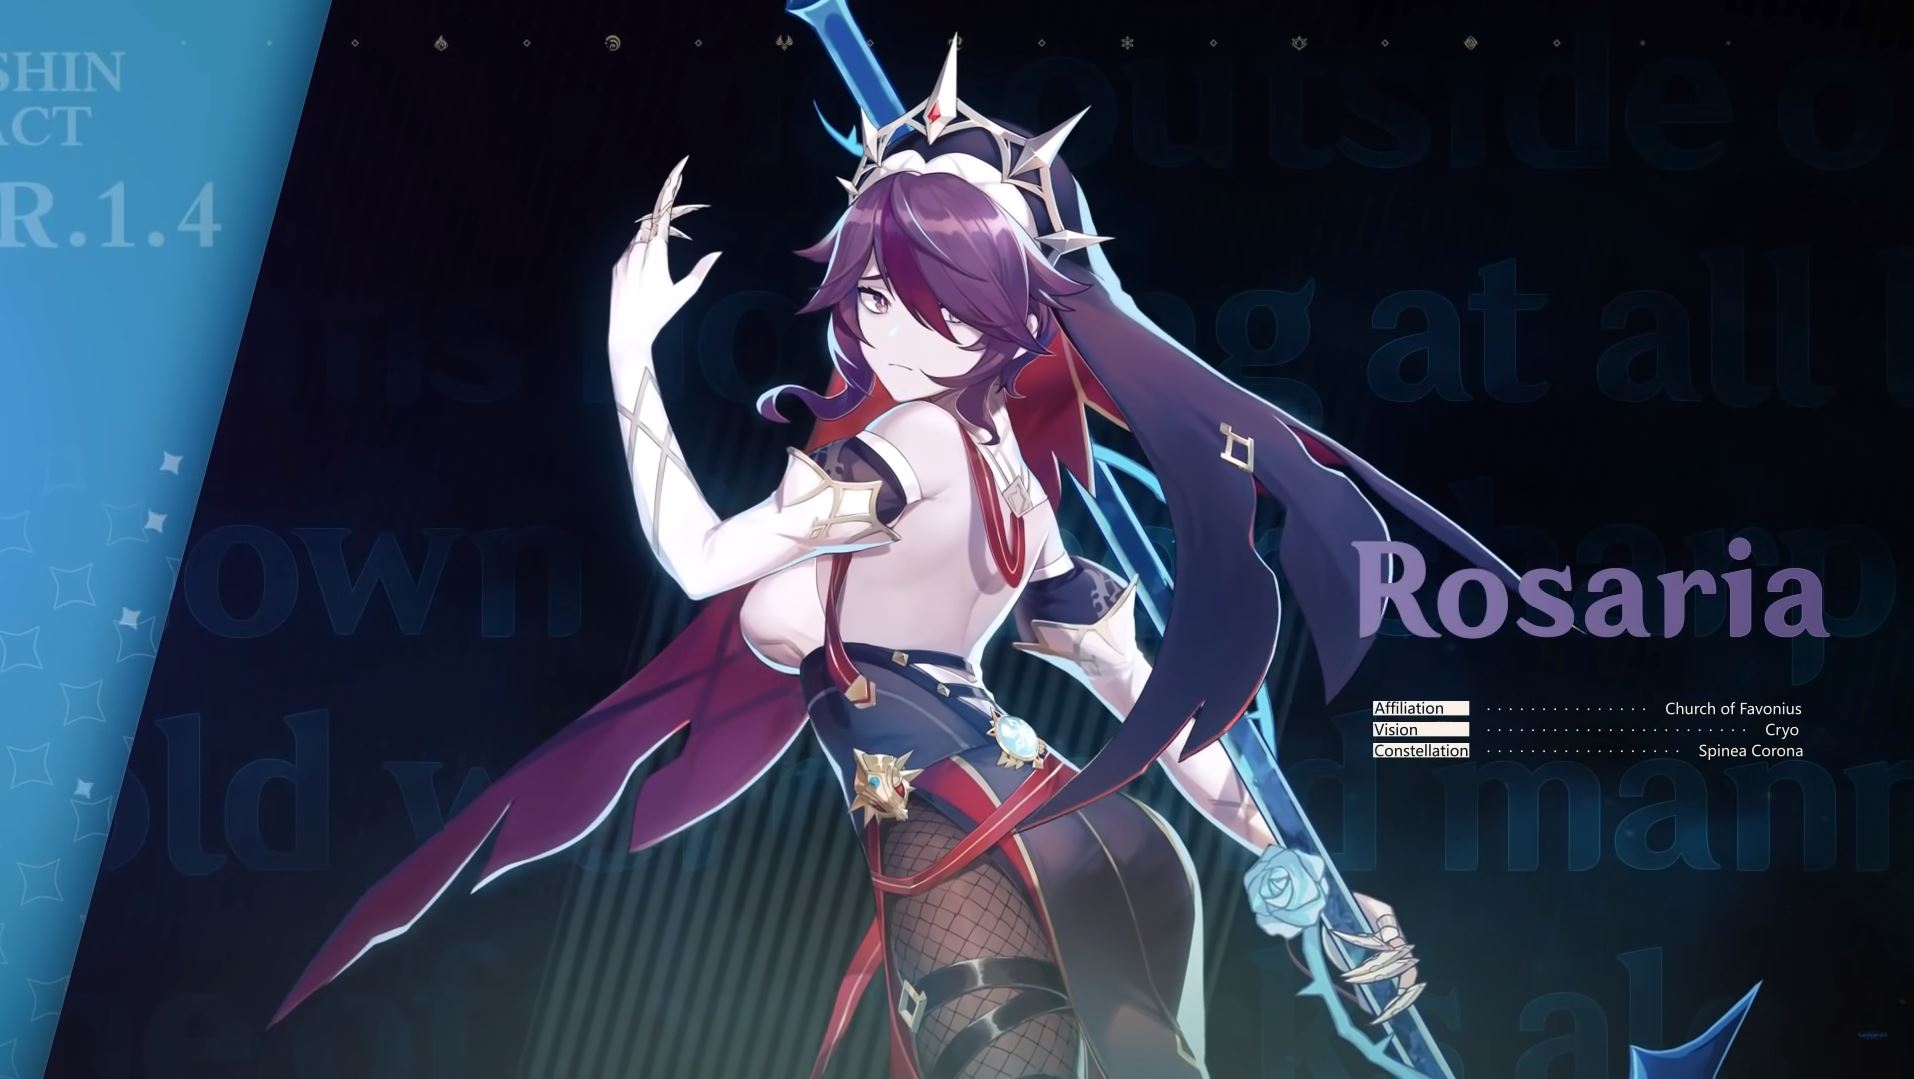 เปิดตัว Rosaria ตัวละครใหม่จากเกม Genshin Impact พร้อมวิดีโอตัวอย่างใหม่ที่บอกเล่าเรื่องราวของ Rosaria: เงาเงียบสยบความผิดบาป